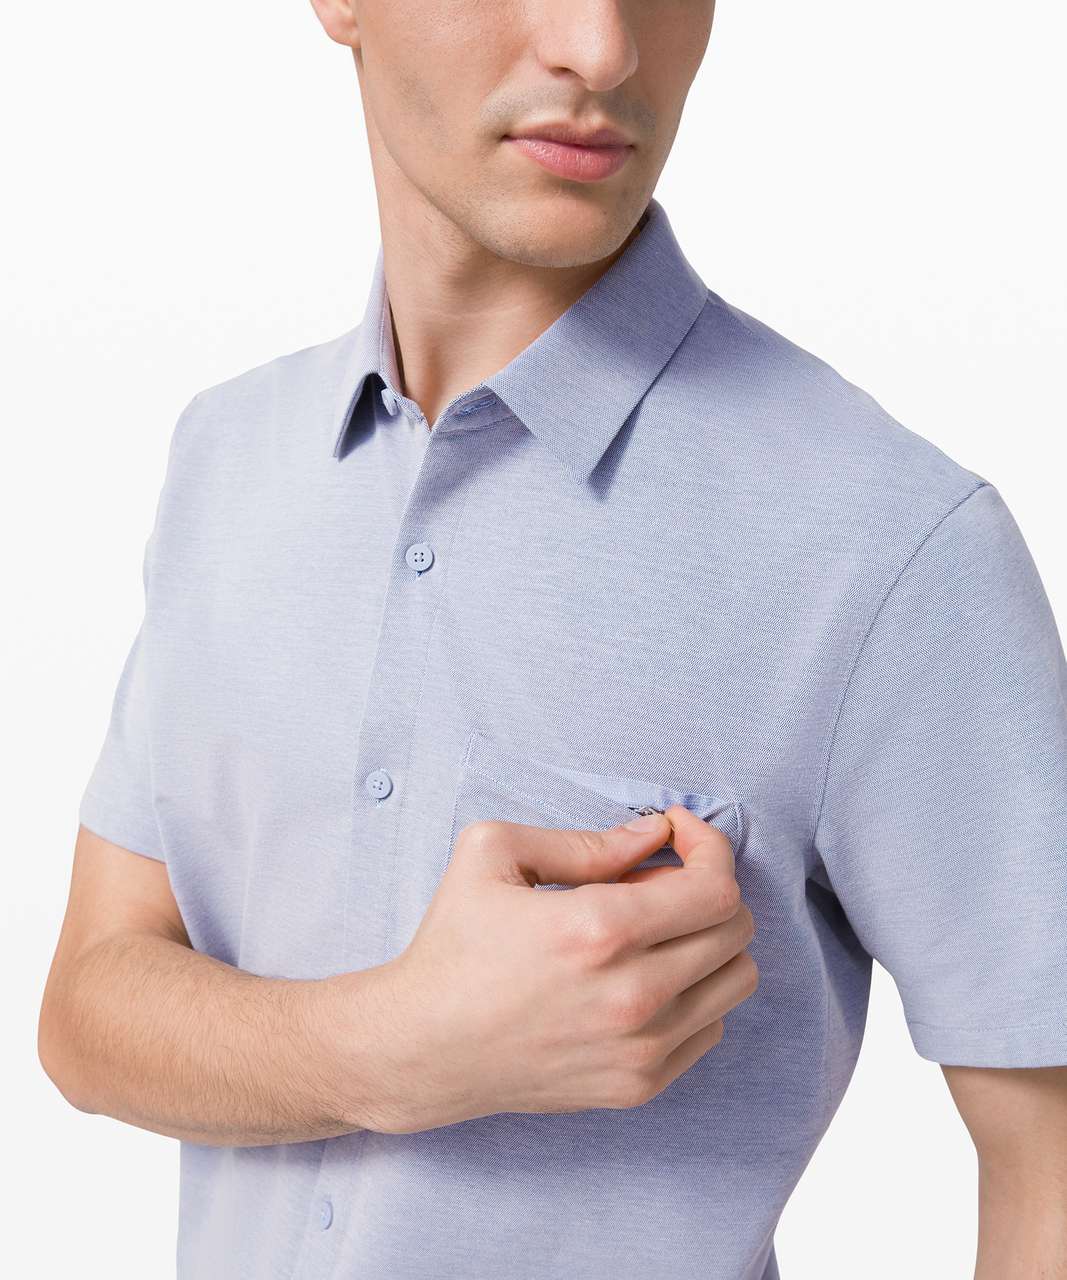 Lululemon Commission Short Sleeve Shirt - Harbor Blue / White